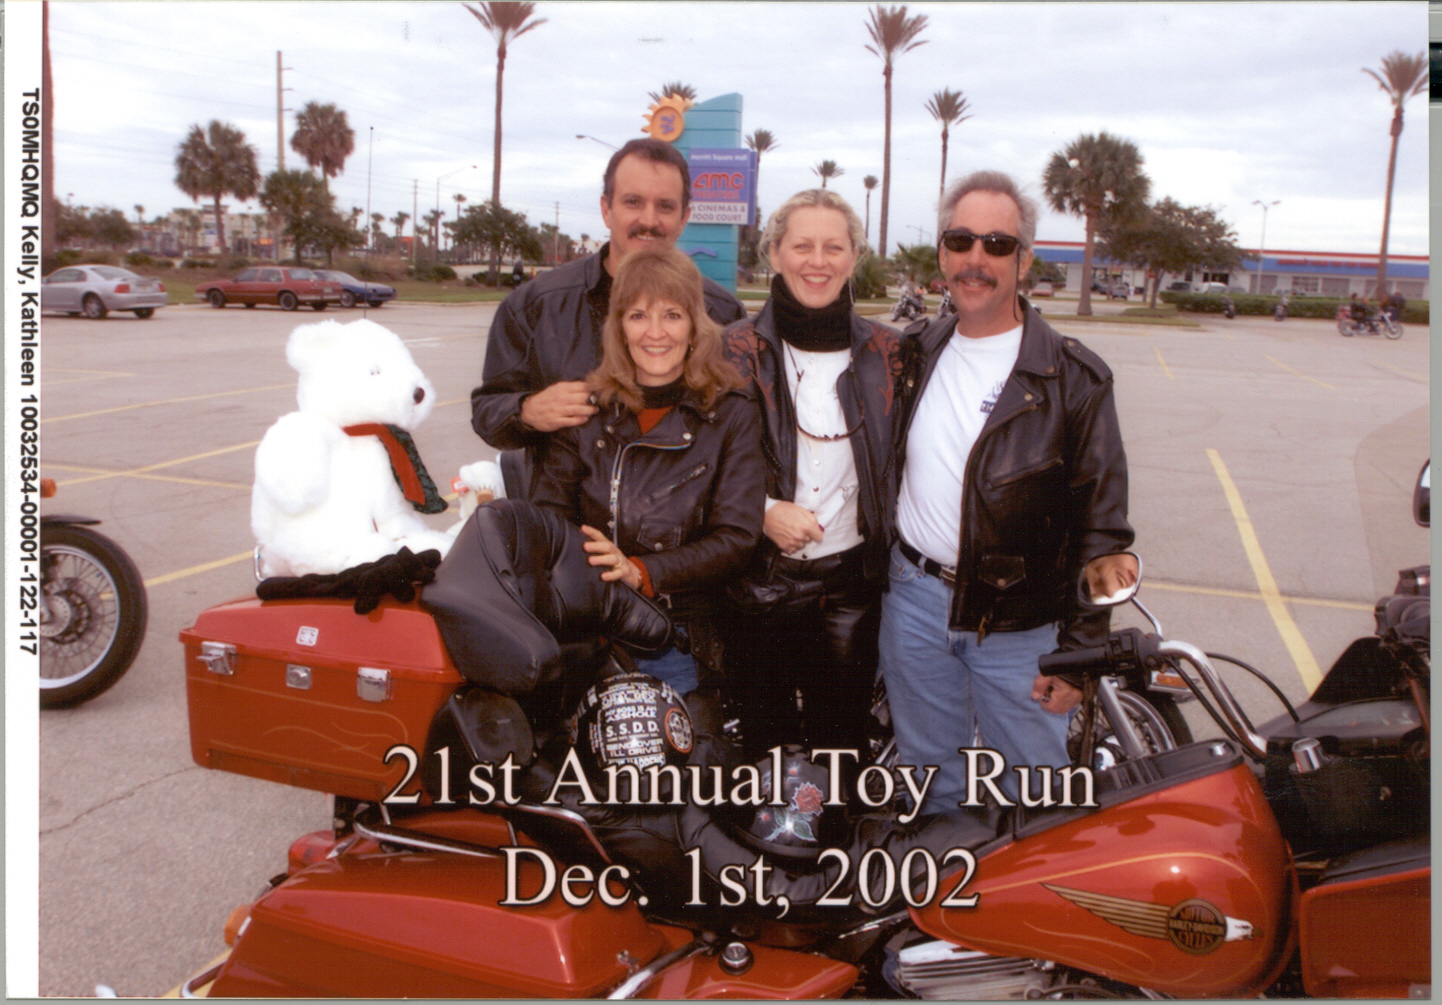 Toy Run 2002.jpg 860.5K